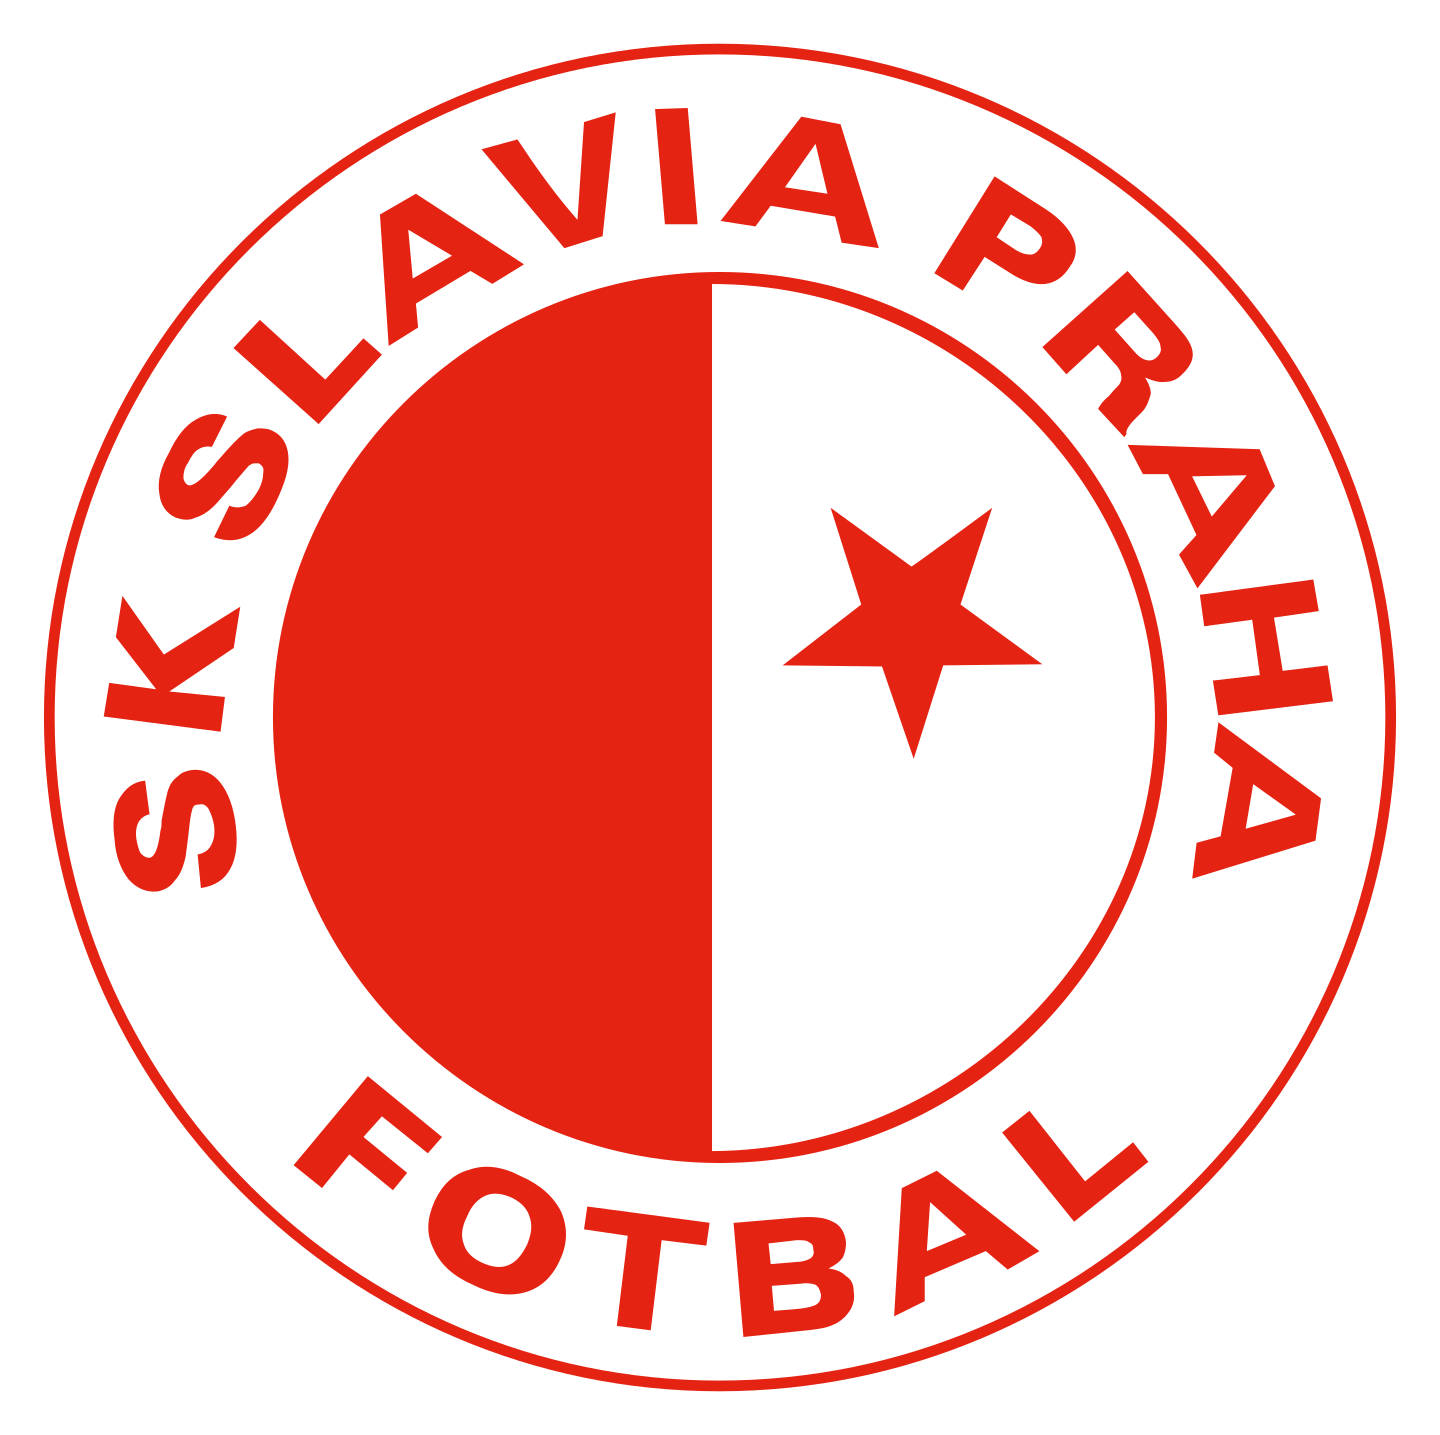 sk slavia praha logo 2 - SK Slavia Prague Logo